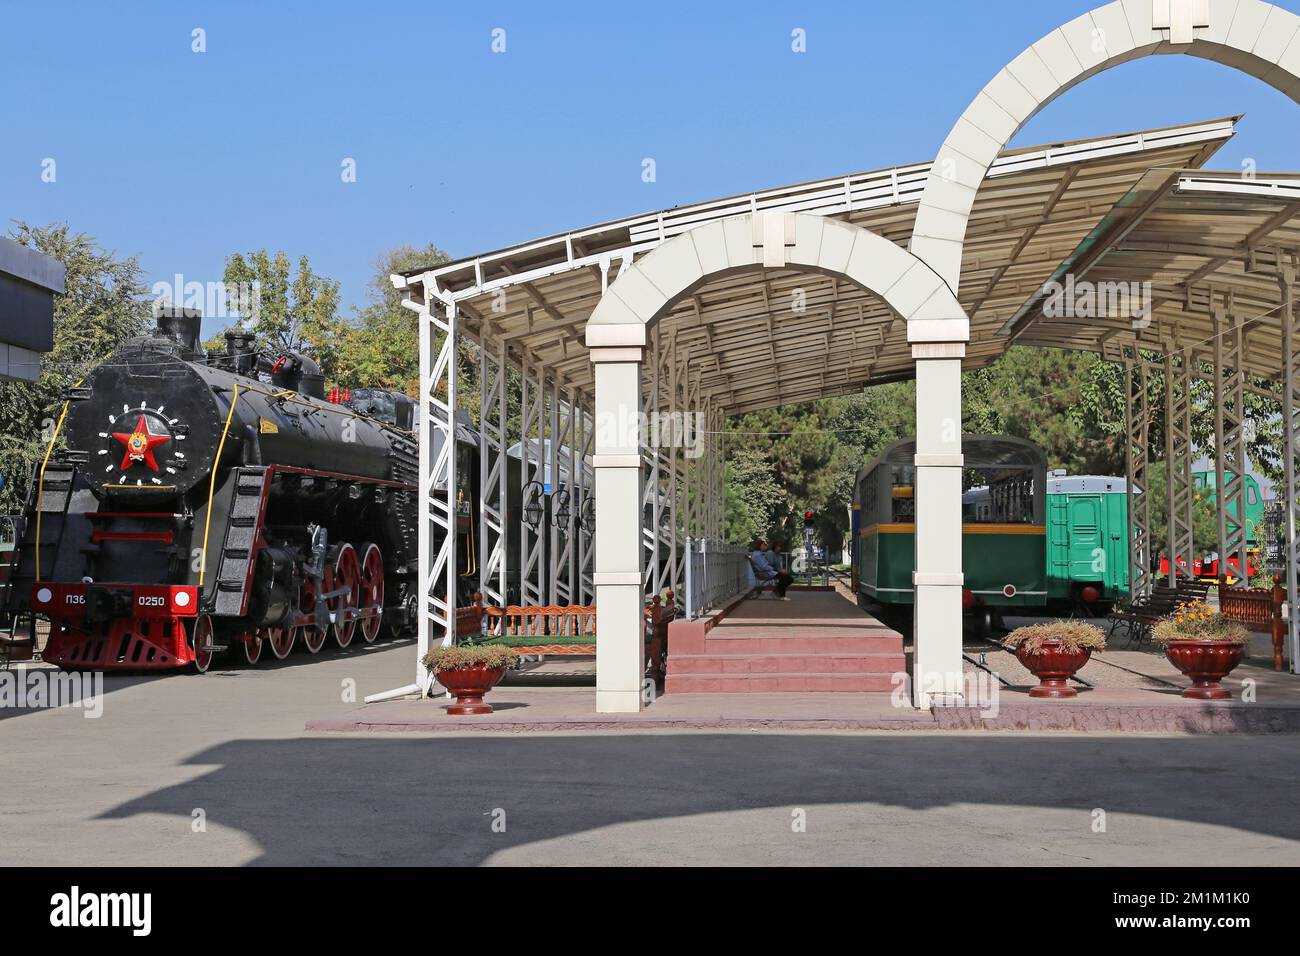 Railway Museum, Turkiston Street, South Tashkent, Tashkent Province, Uzbekistan, Central Asia Stock Photo